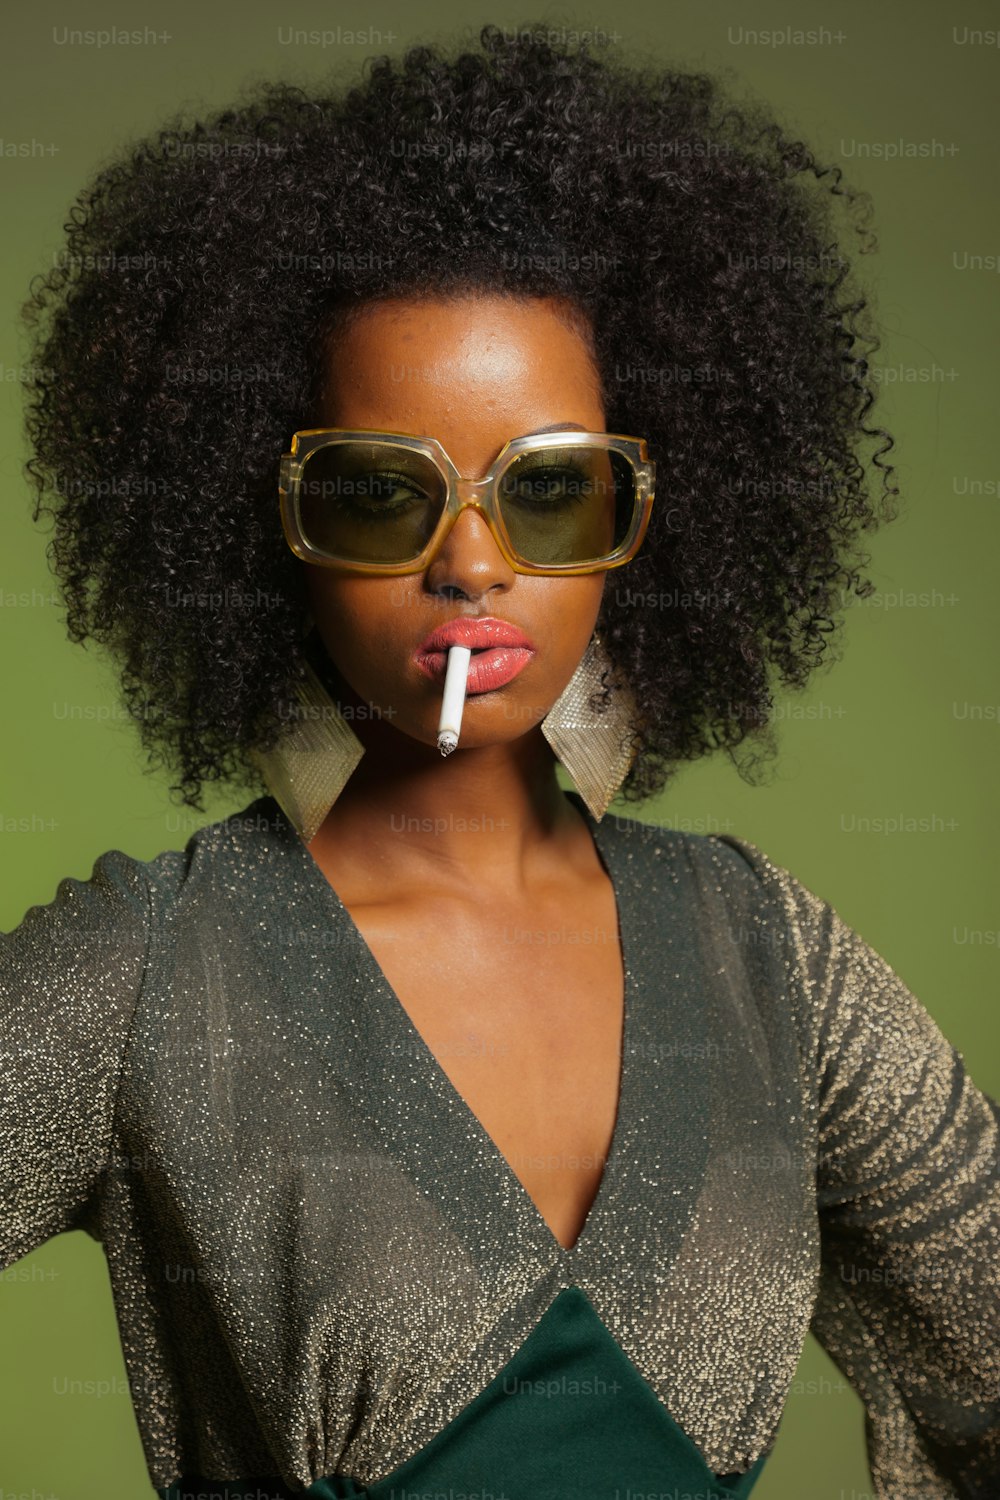 Fumer rétro 70s fashion afro femme avec robe verte et lunettes de soleil. Fond vert.